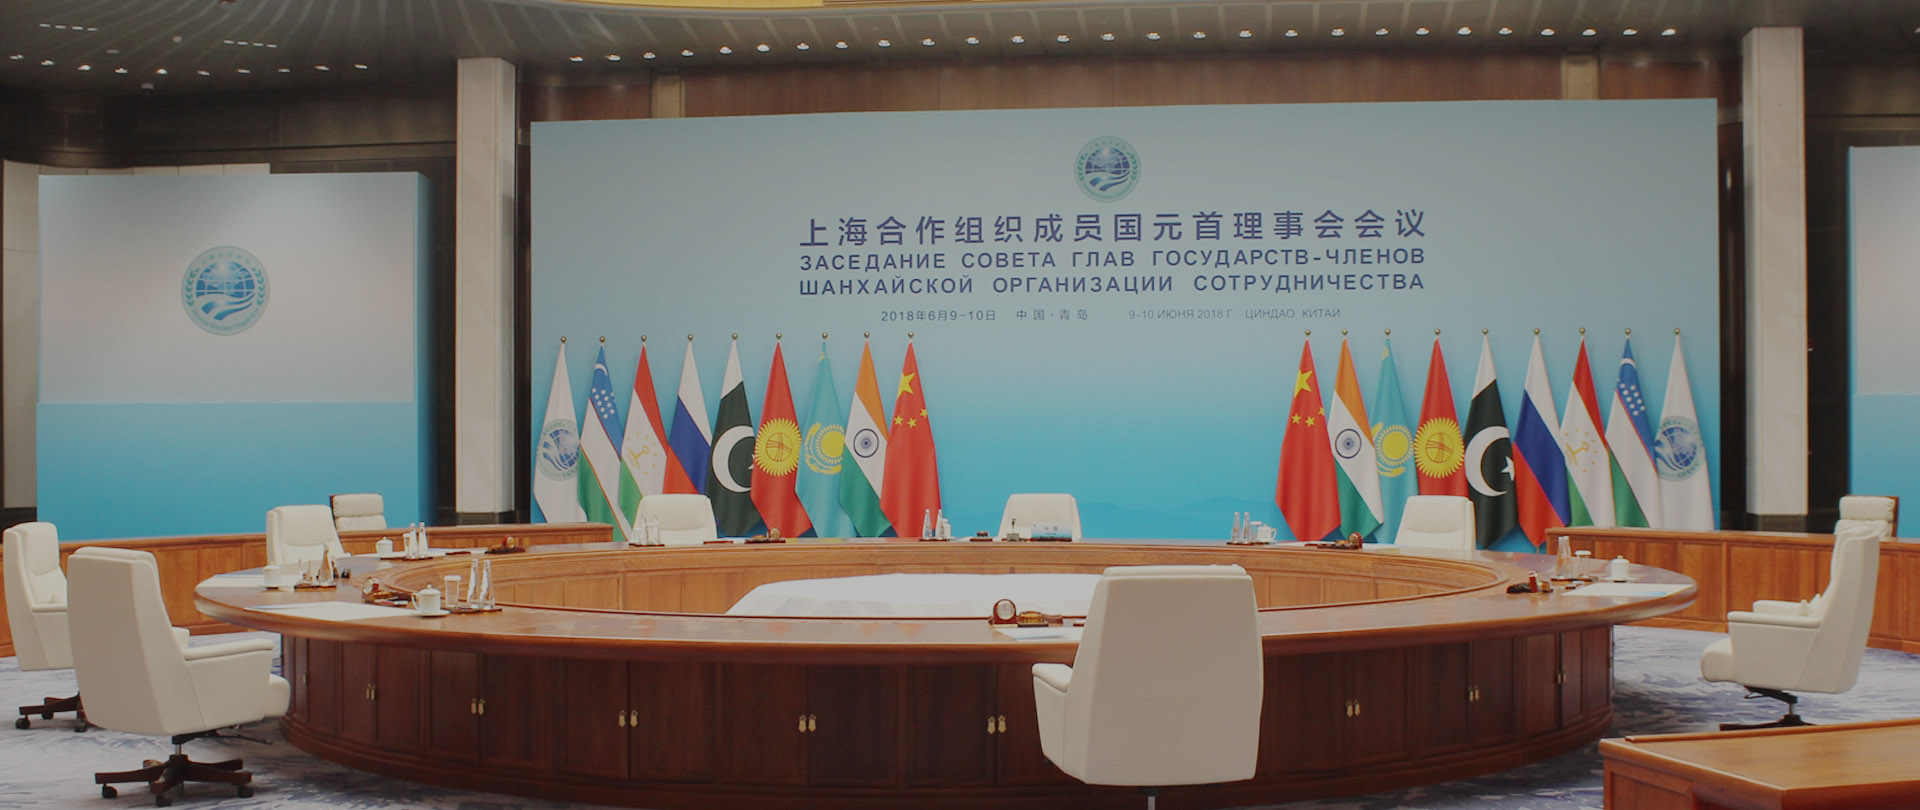 上海合作组织青岛峰会指定警用用品